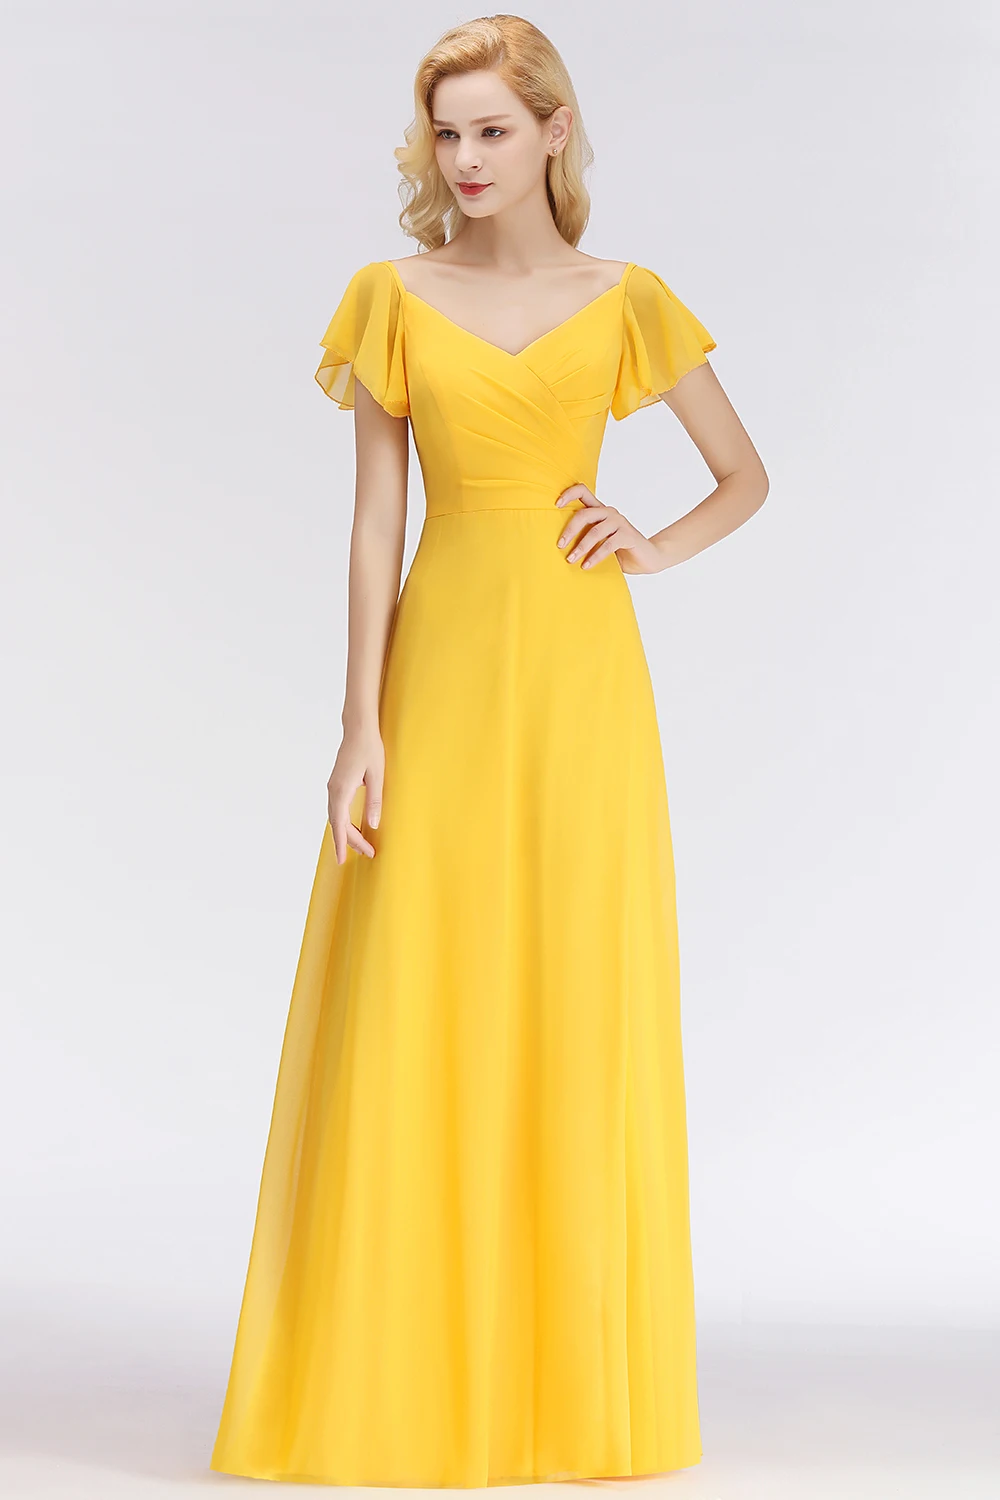 Vestido de Festa Сексуальное желтое длинное вечернее платье с v-образным вырезом на спине элегантное шифоновое вечернее платье с коротким рукавом Robe De Soiree Longue